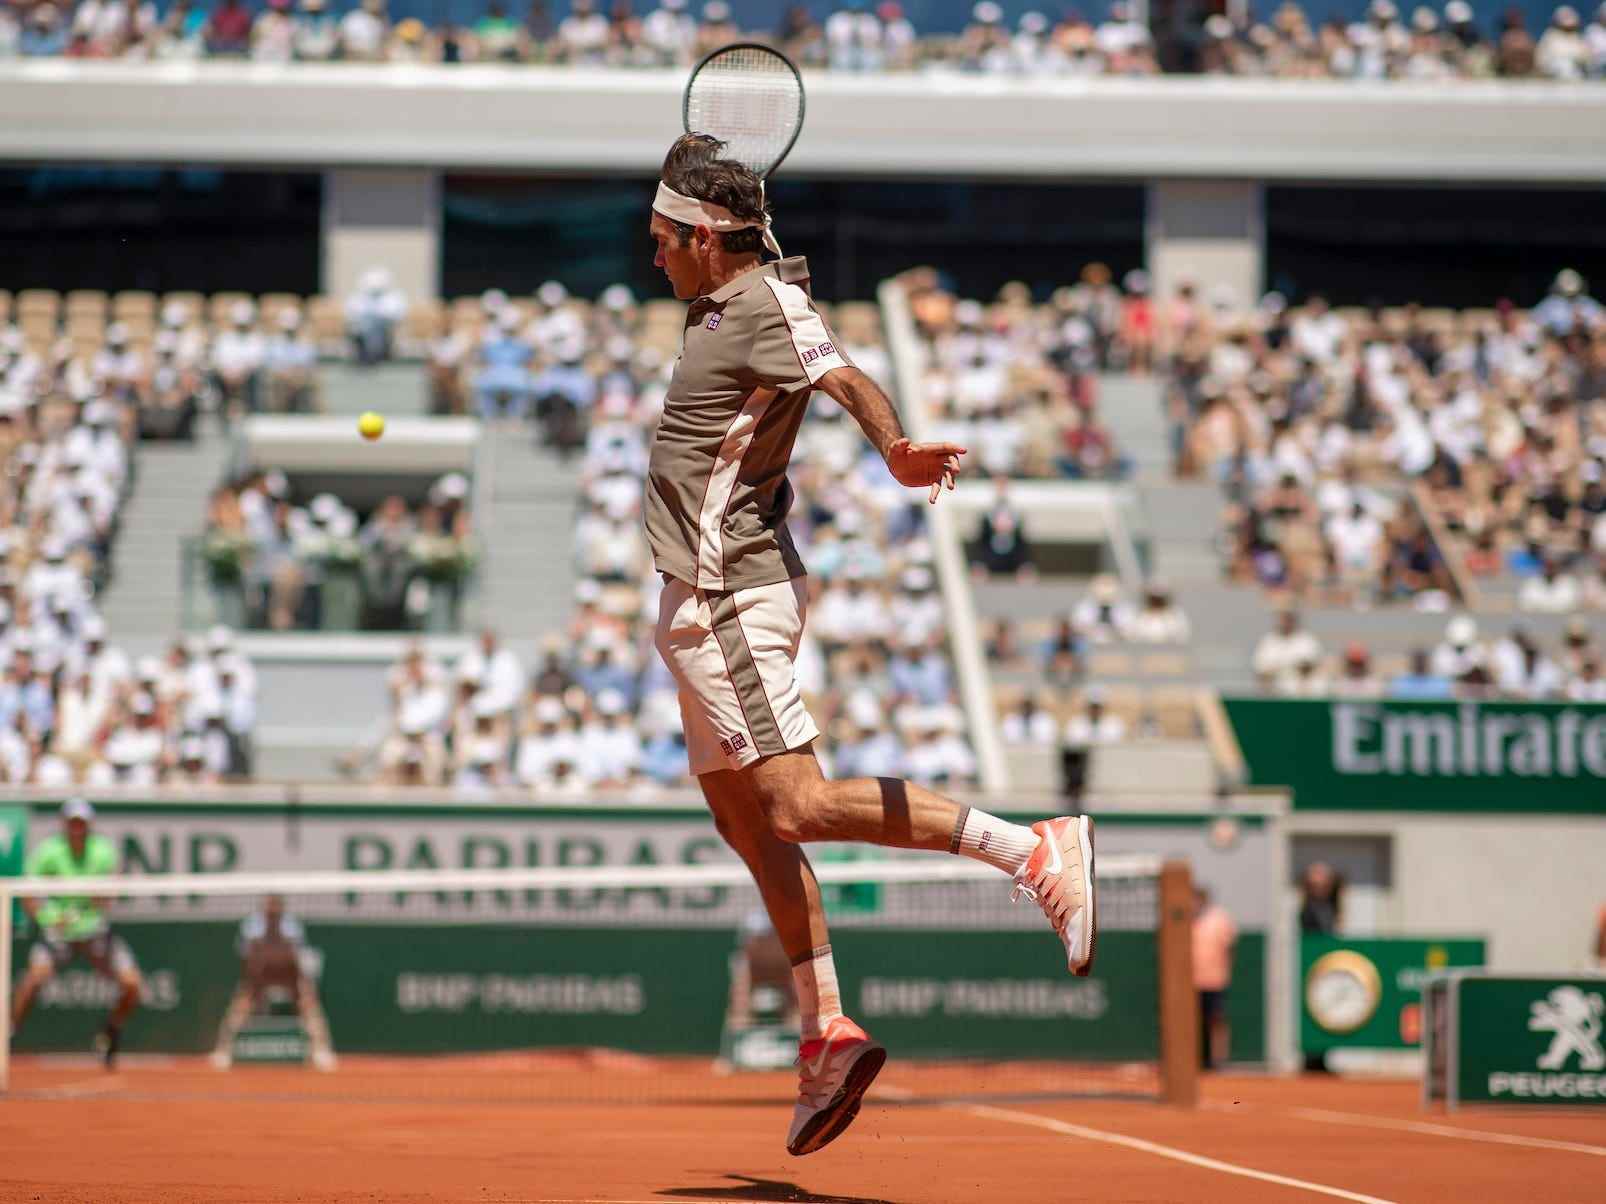 Roger Federer French Open 2019 2